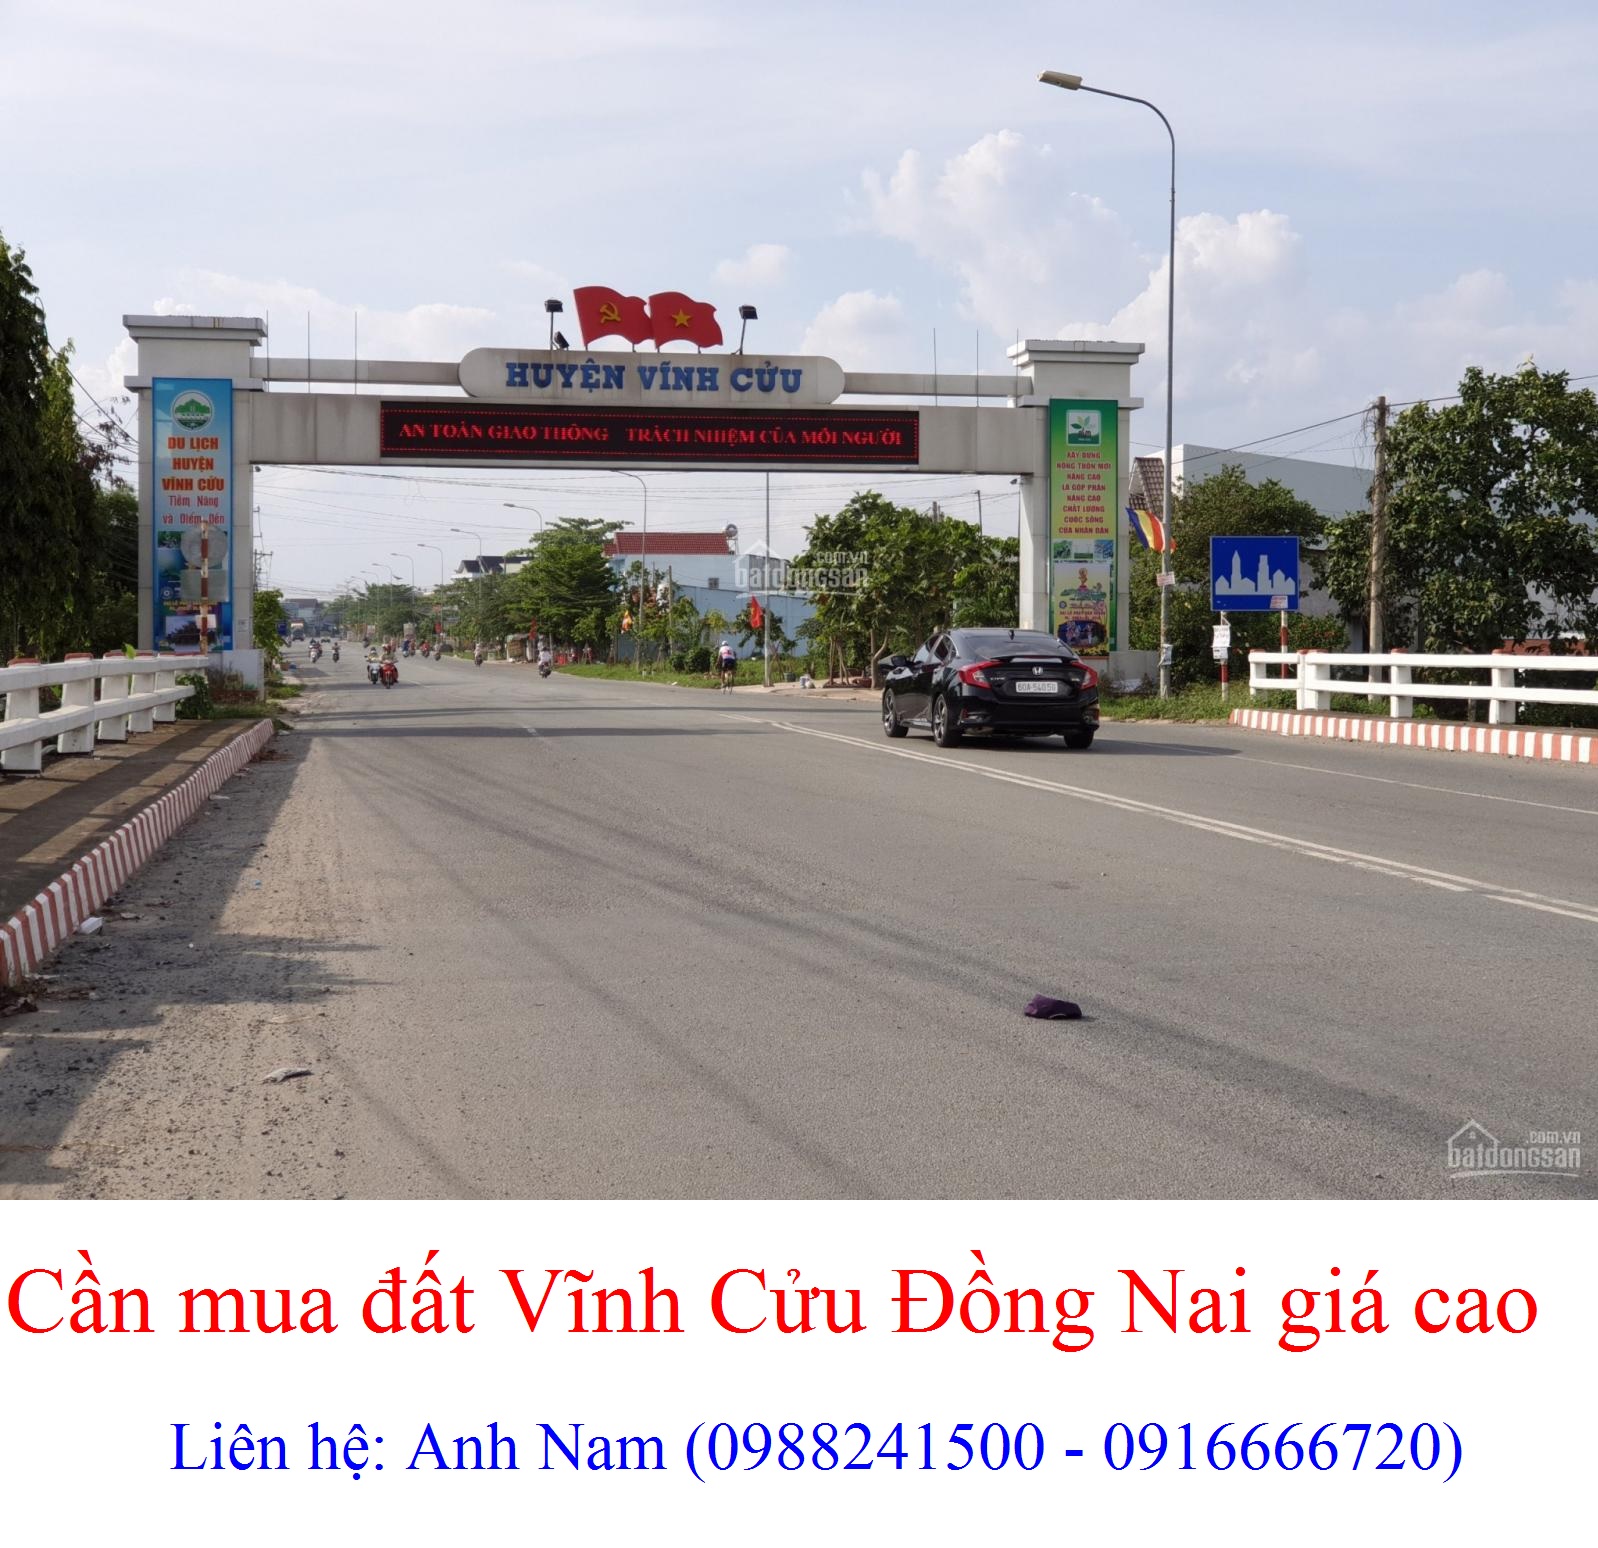 Cần mua gấp đất huyện Vĩnh Cửu, Đồng Nai giá cao, thiện chí mua, chịu phí sang tên